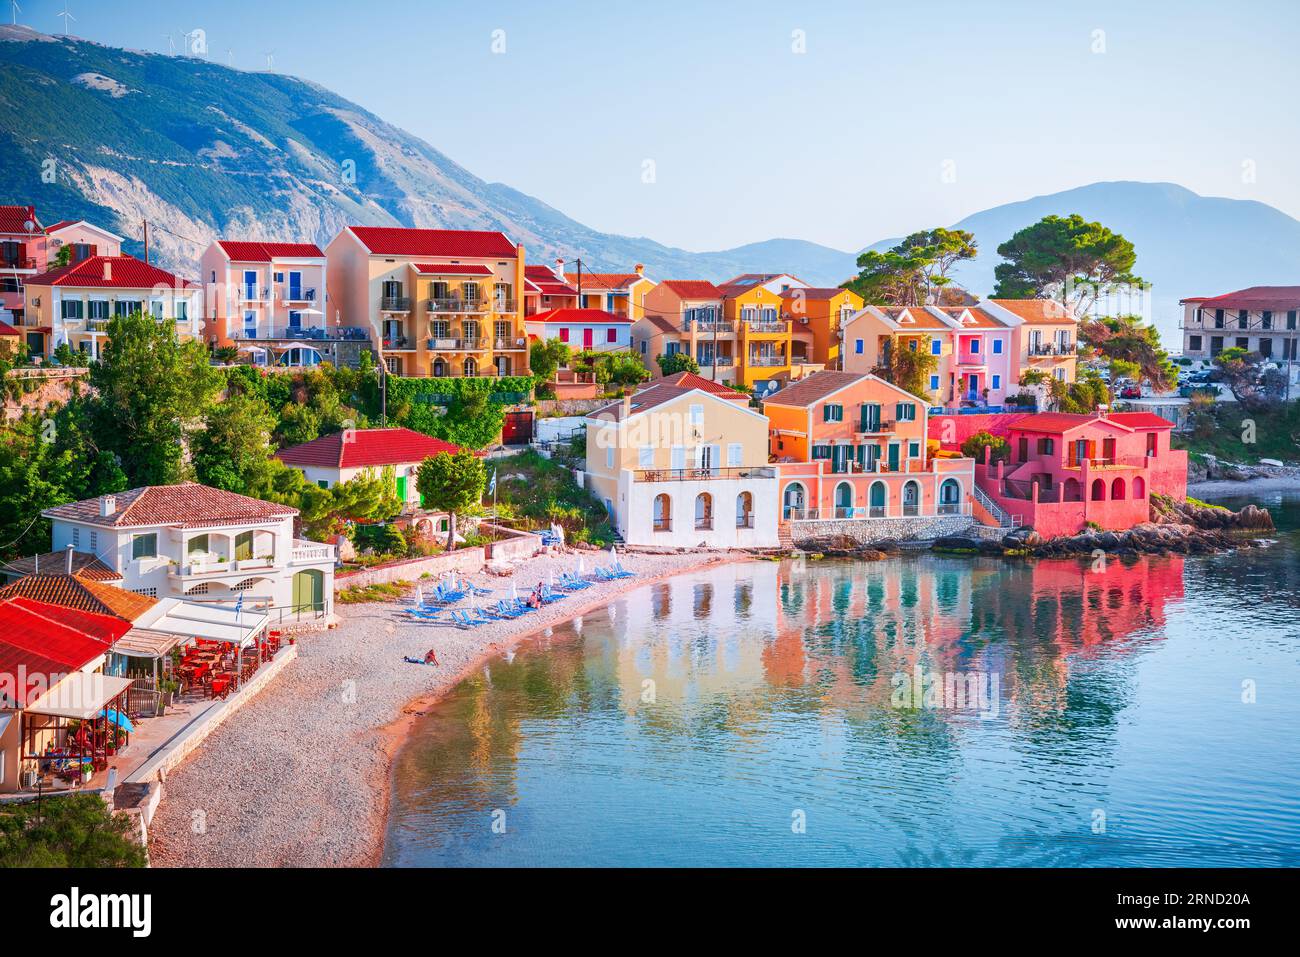 Assos, Cefalonia - Grecia. Splendido villaggio pittoresco annidato sulle idilliache isole ioniche. Case colorate e baia color turchese. Foto Stock